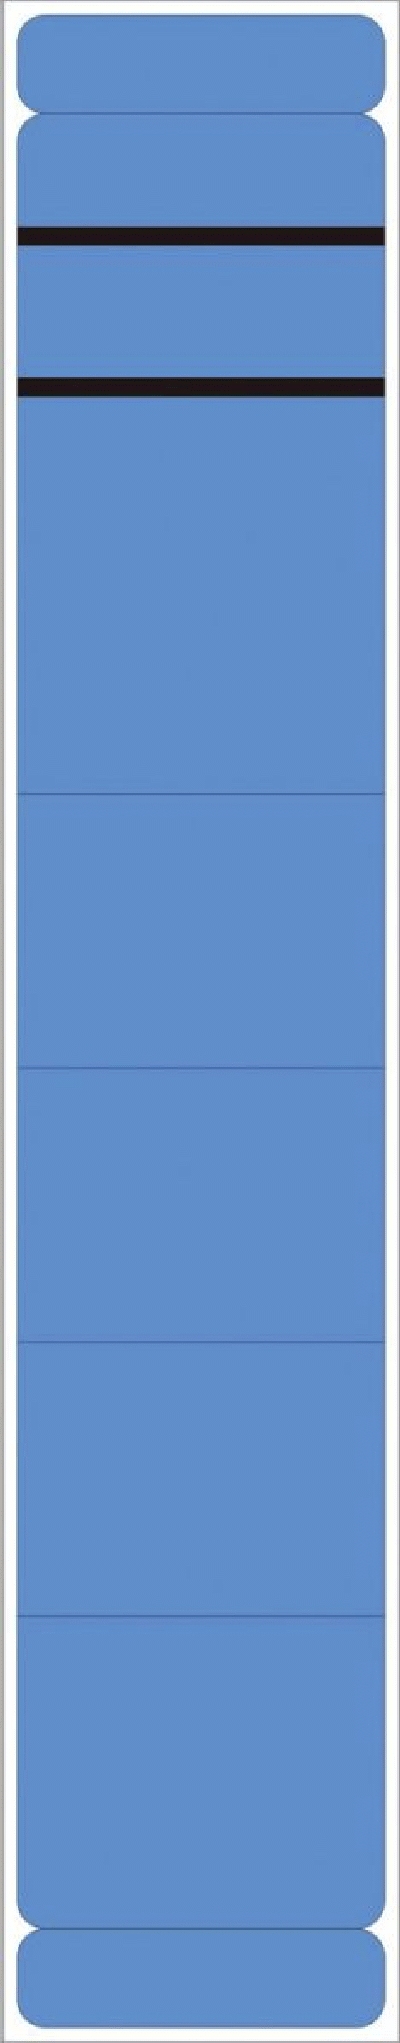 Neutral Ordner Rückenschilder - schmal/kurz, 190 Stück, blau